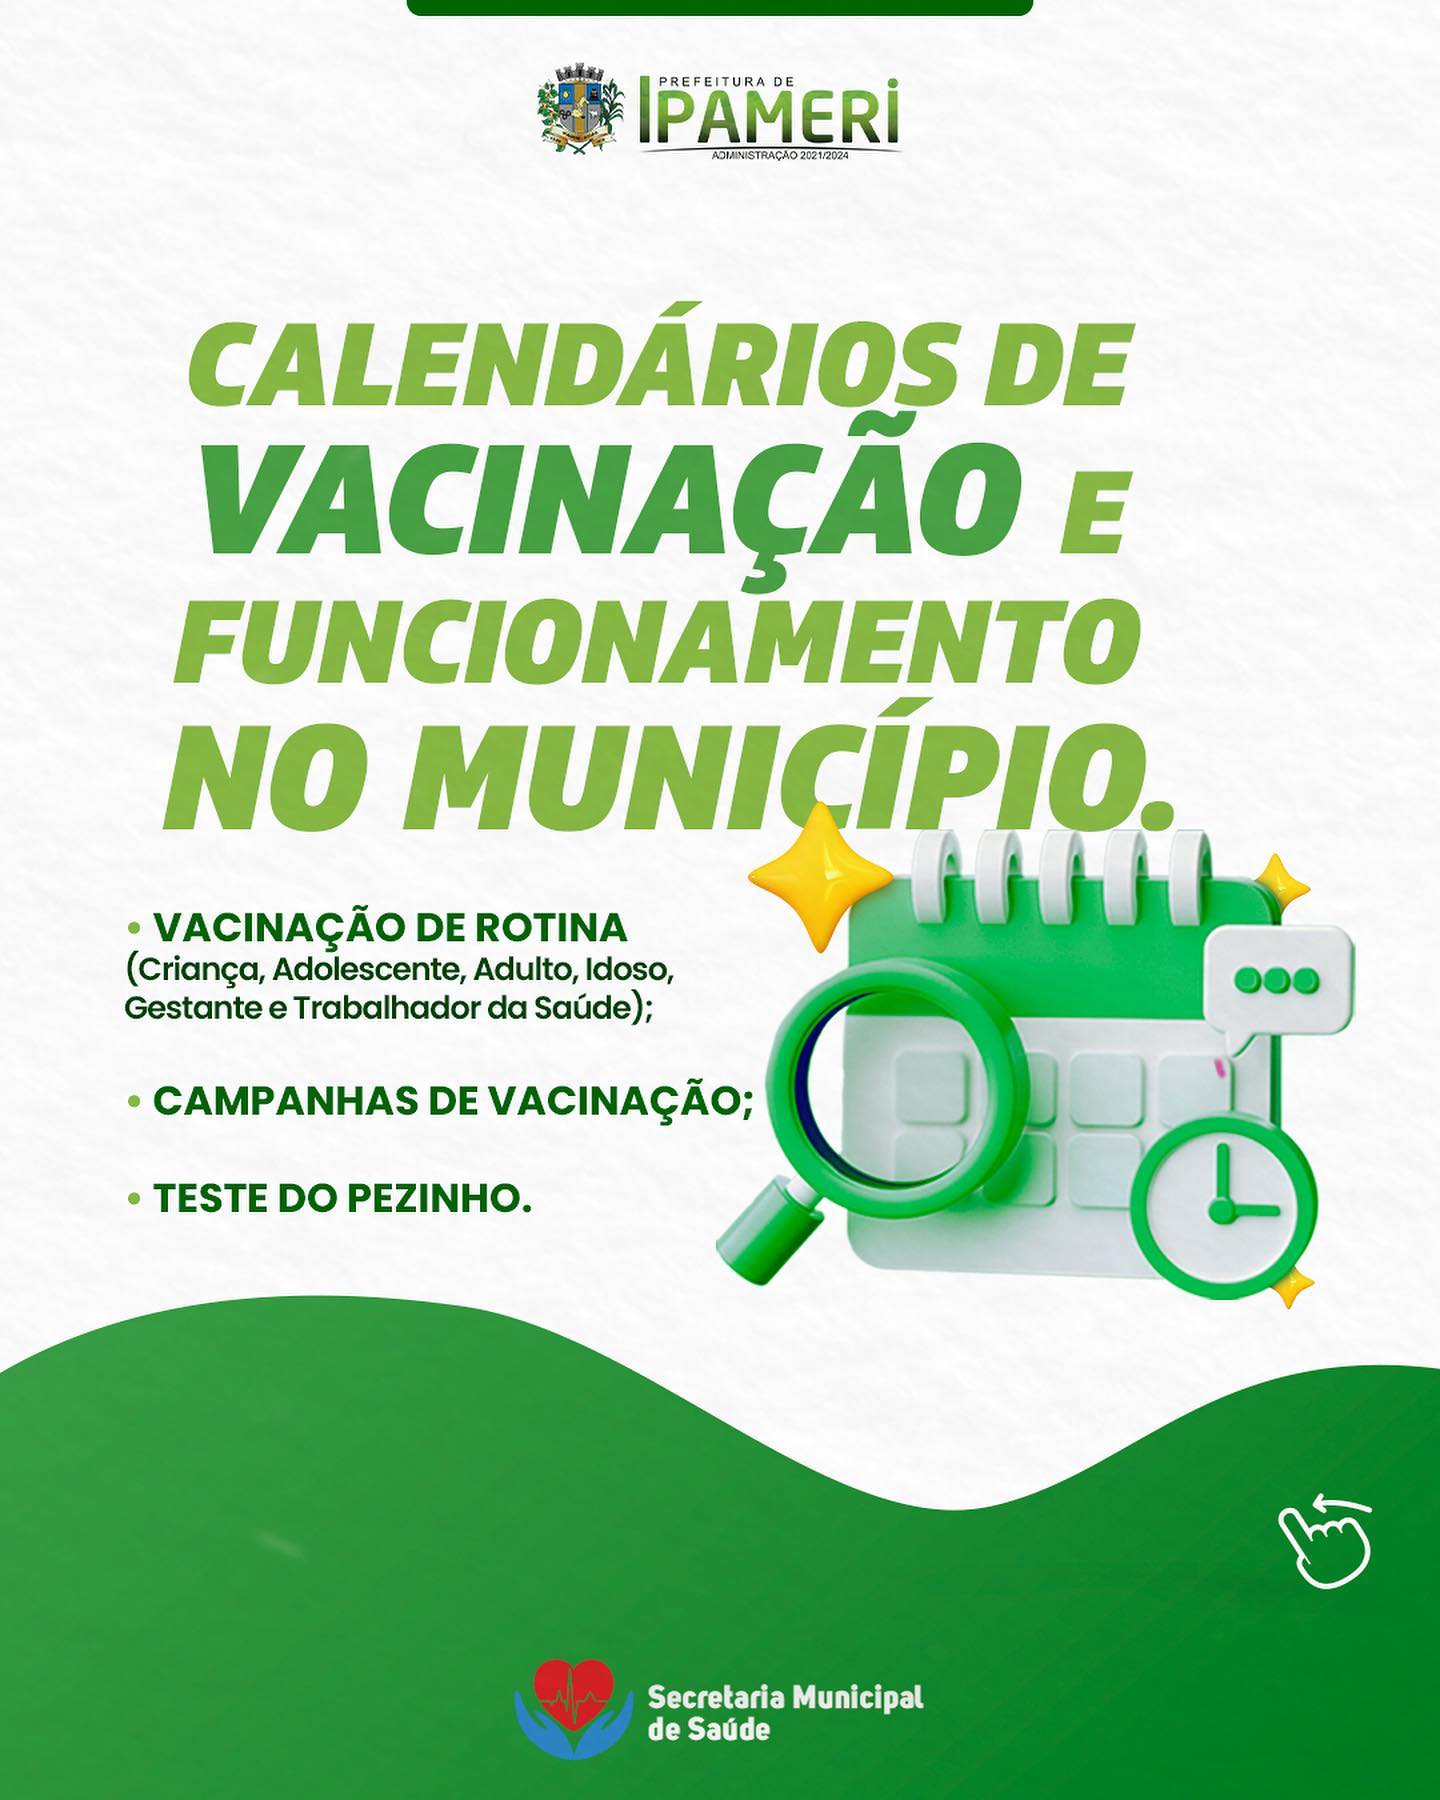 A Prefeitura de Ipameri preparou um calendário de vacinação e funcionamento no município